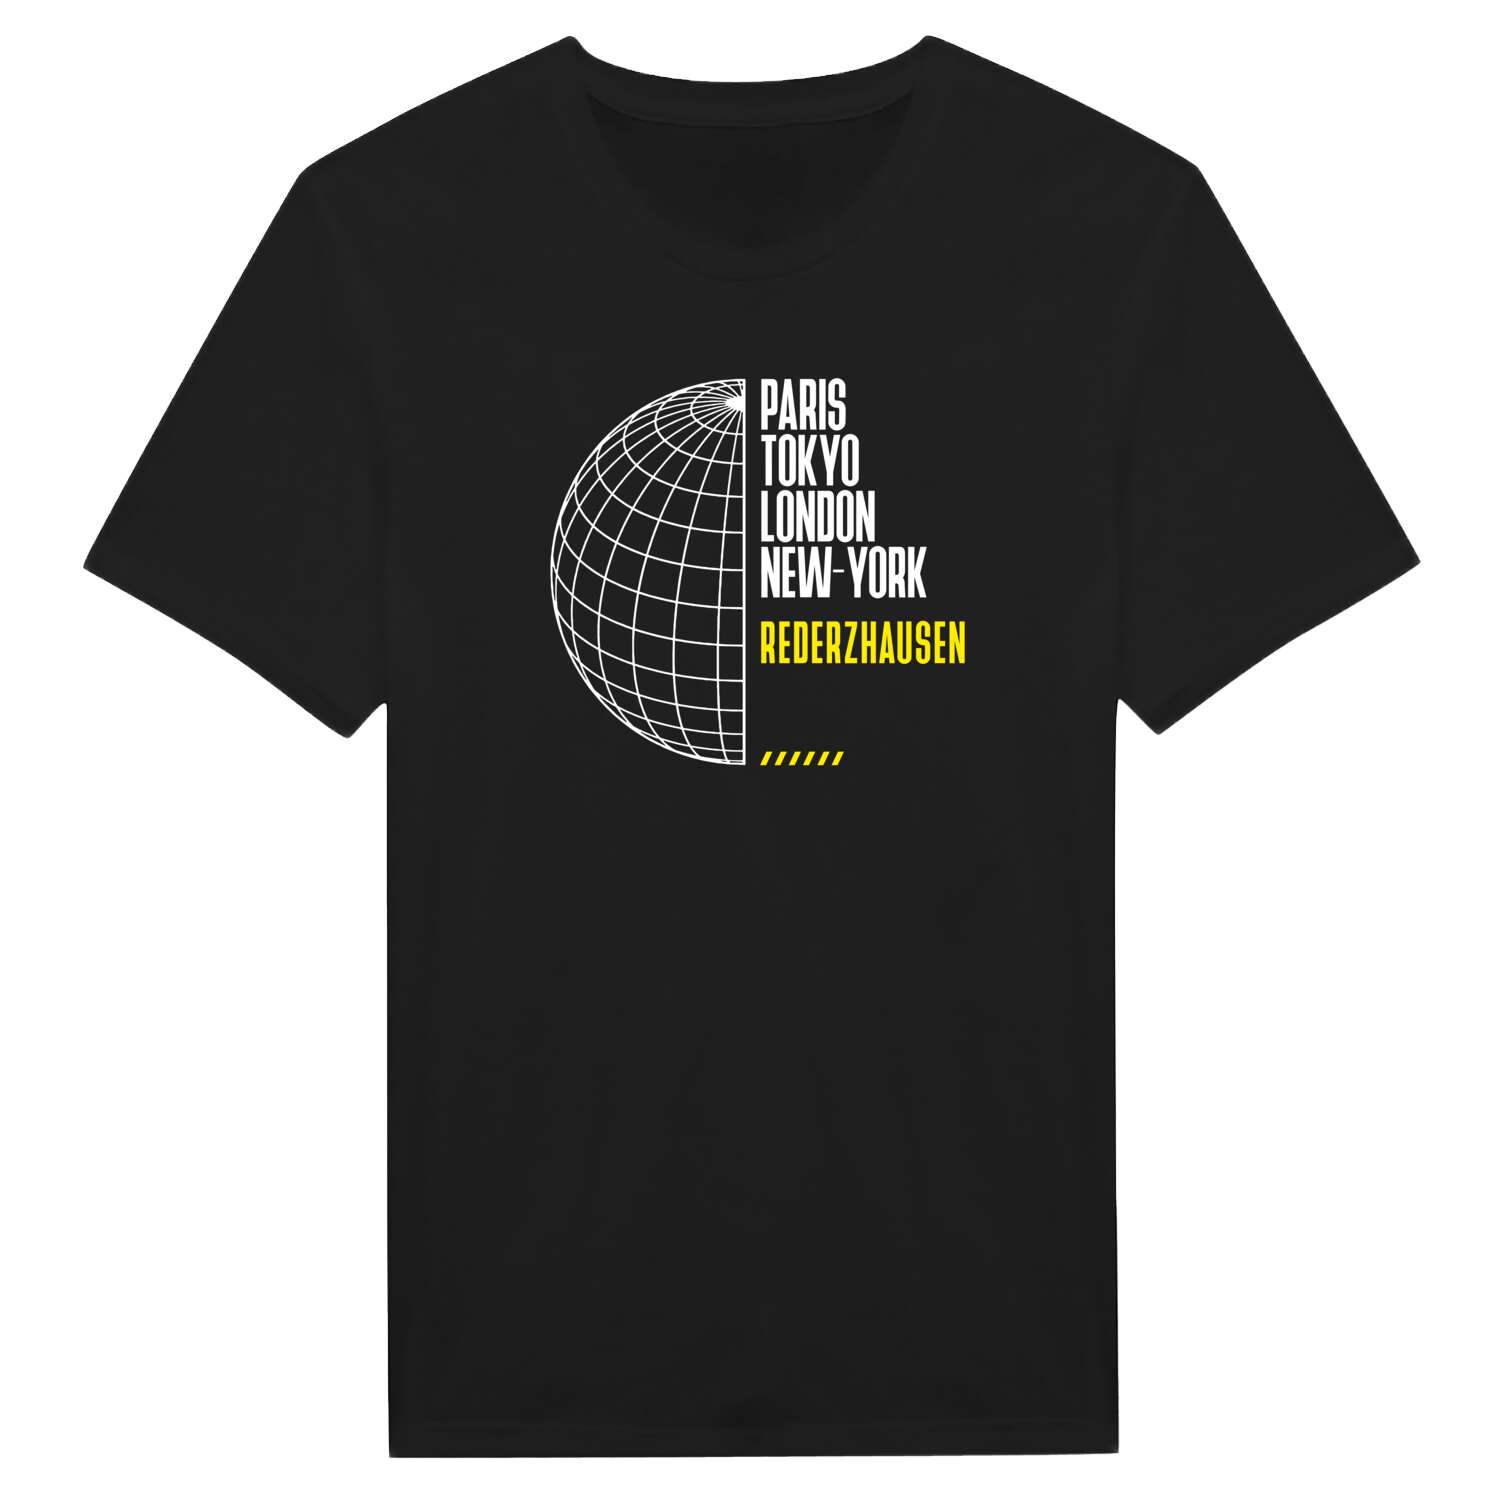 Rederzhausen T-Shirt »Paris Tokyo London«